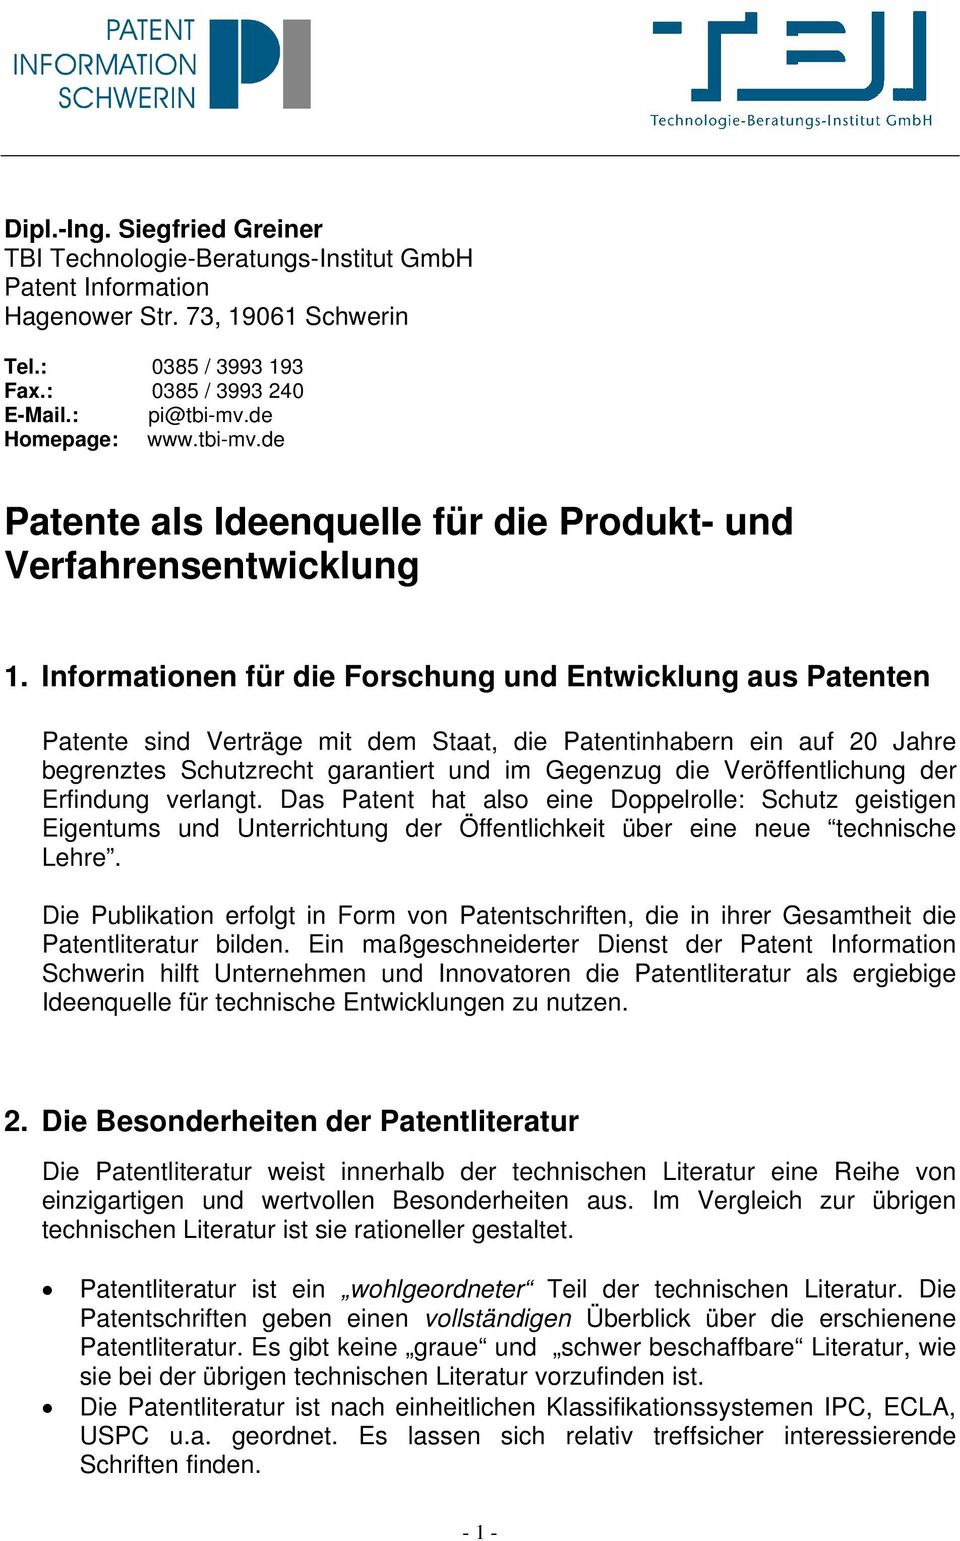 Informationen für die Forschung und Entwicklung aus Patenten Patente sind Verträge mit dem Staat, die Patentinhabern ein auf 20 Jahre begrenztes Schutzrecht garantiert und im Gegenzug die